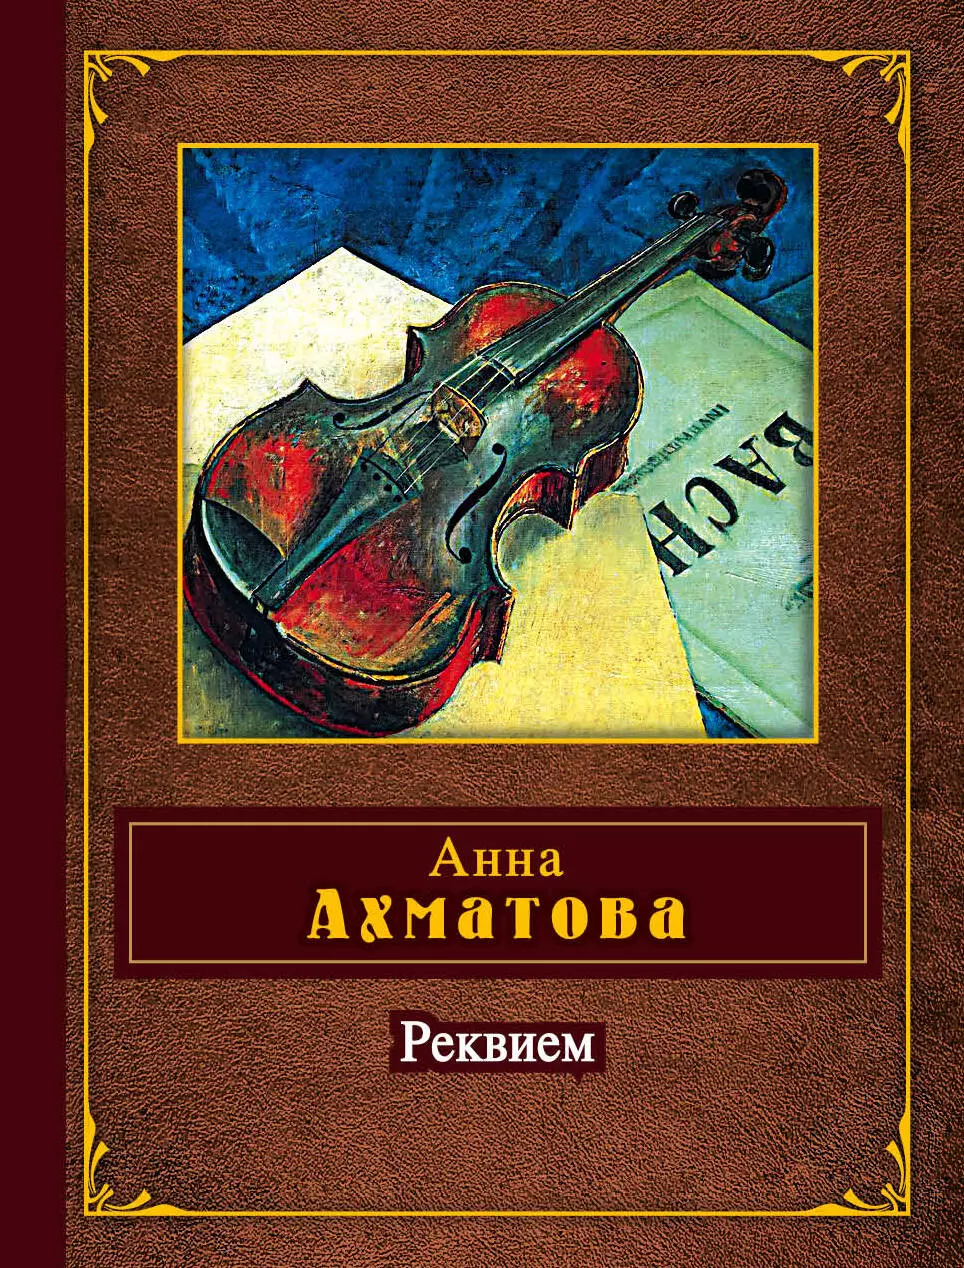 Прочитать реквием ахматовой. Реквием Ахматова. Реквием Ахматова книга. Реквием обложка книги.